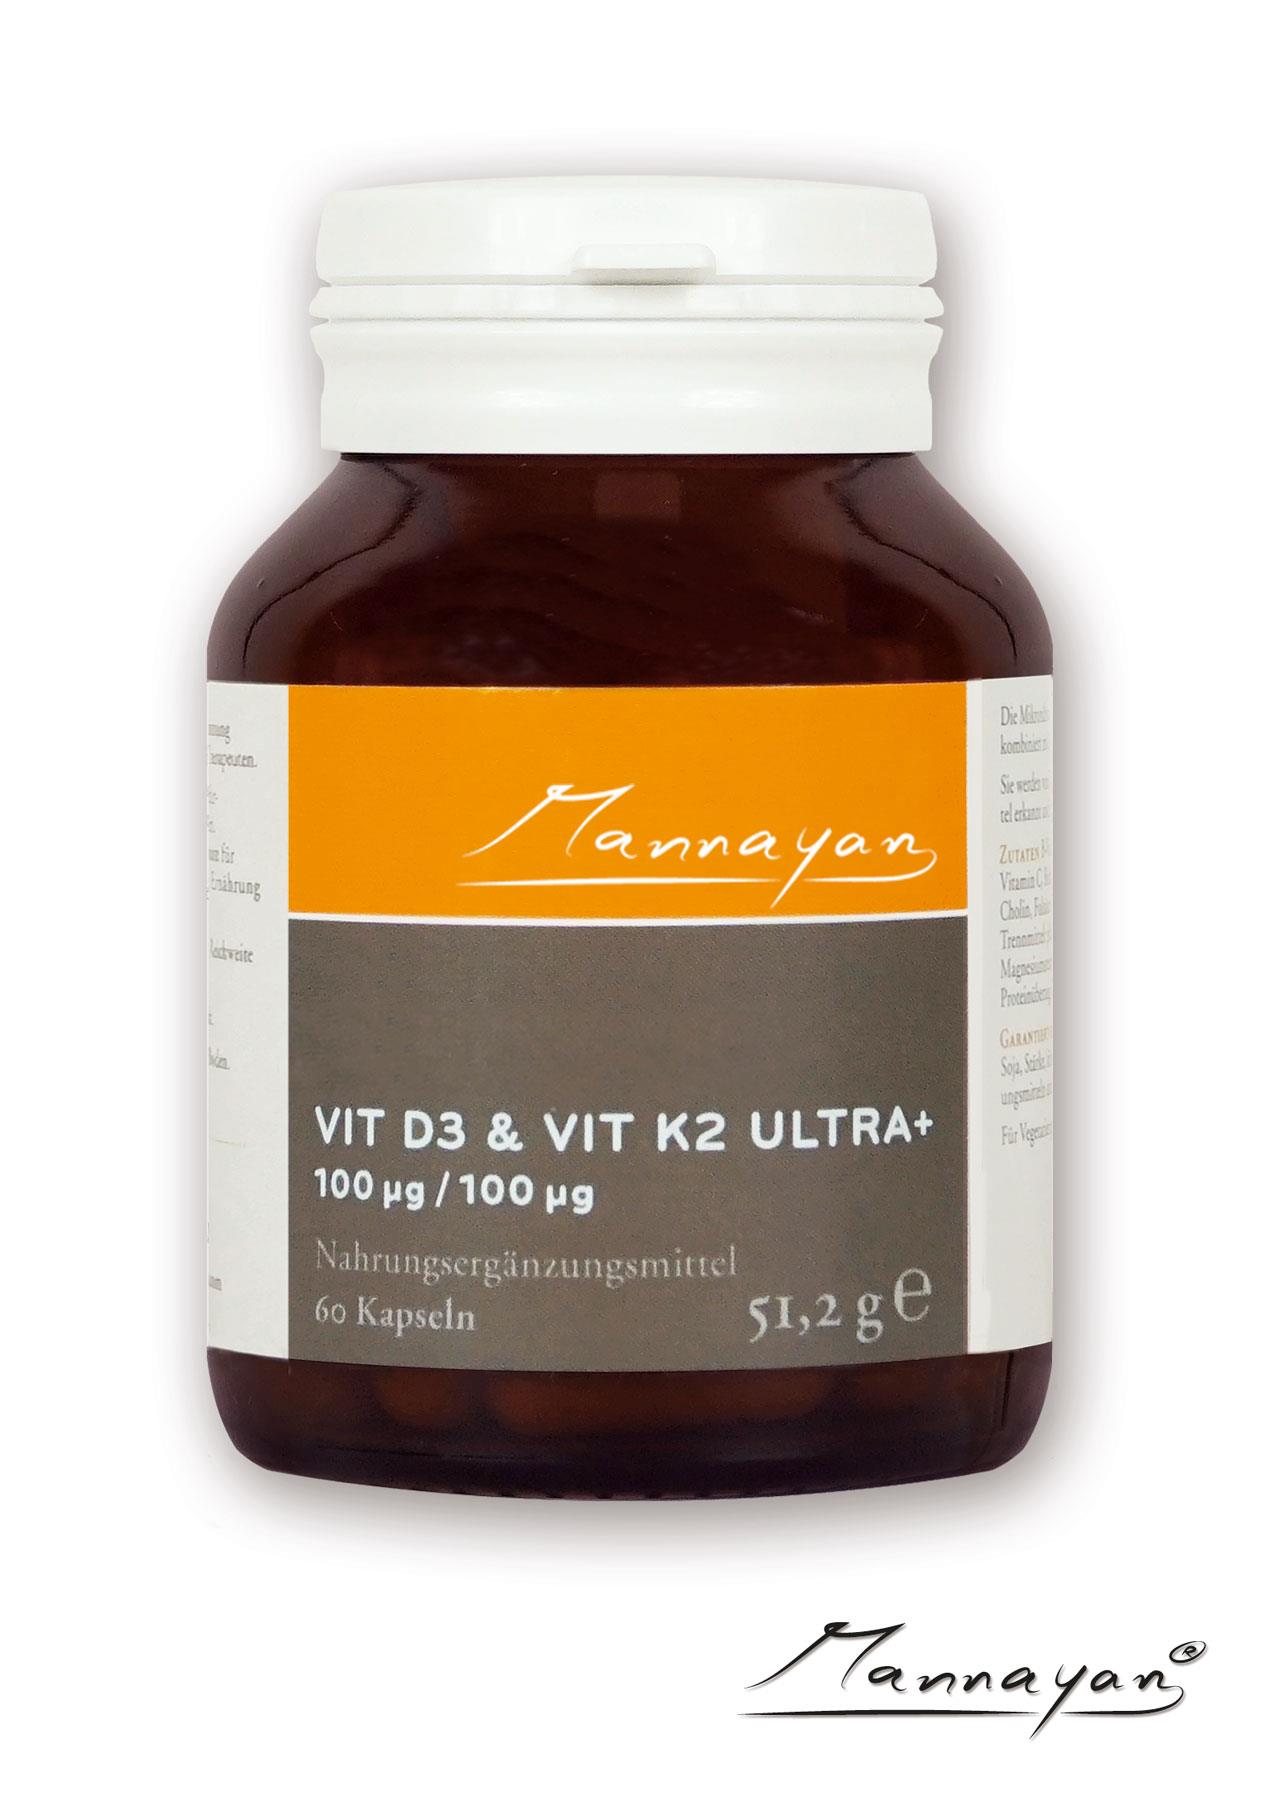 Vitamin D3 & K2 Ultra+ von Mannayan